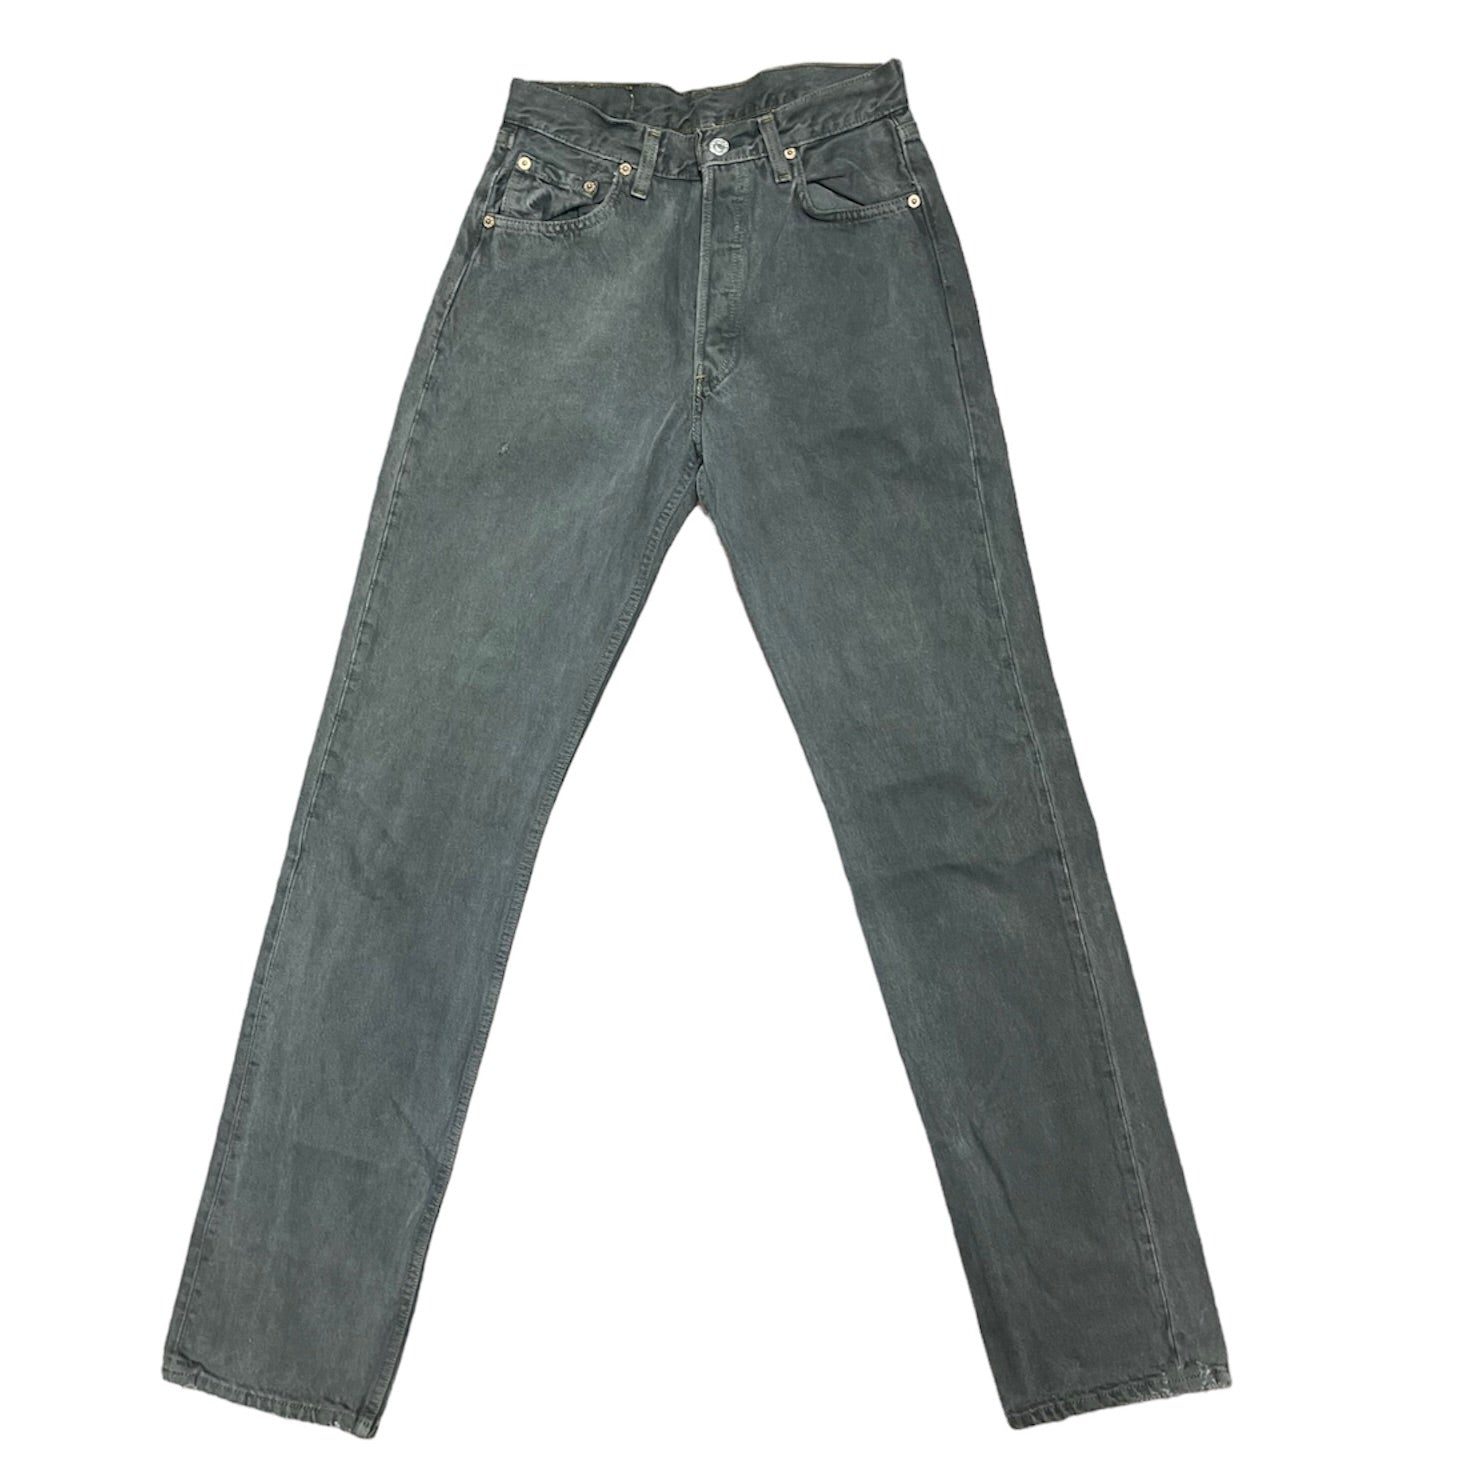 Vintage Levis 501 Grey Jeans (W29/L36)